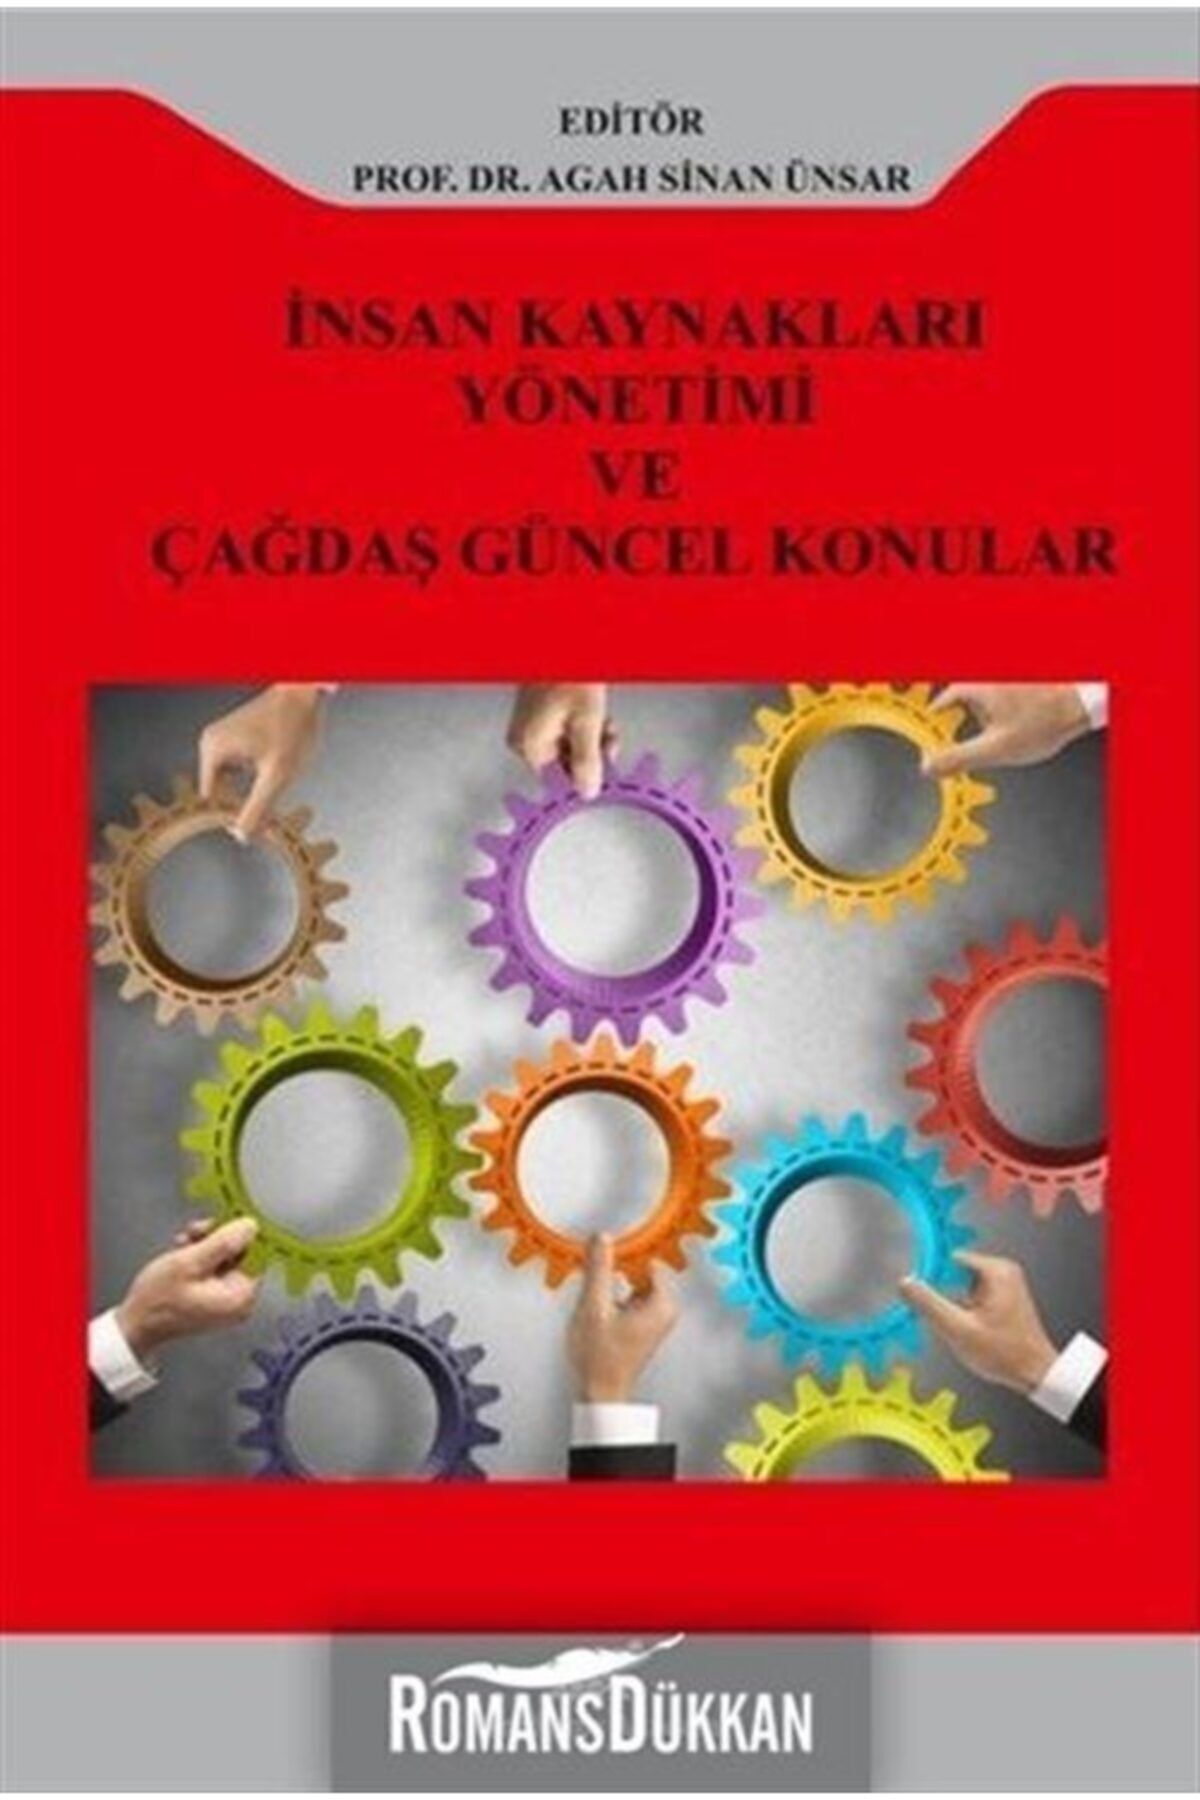 Paradigma Akademi Yayınları Insan Kaynakları Yönetimi Ve Çağdaş Güncel Konular - Kolektif